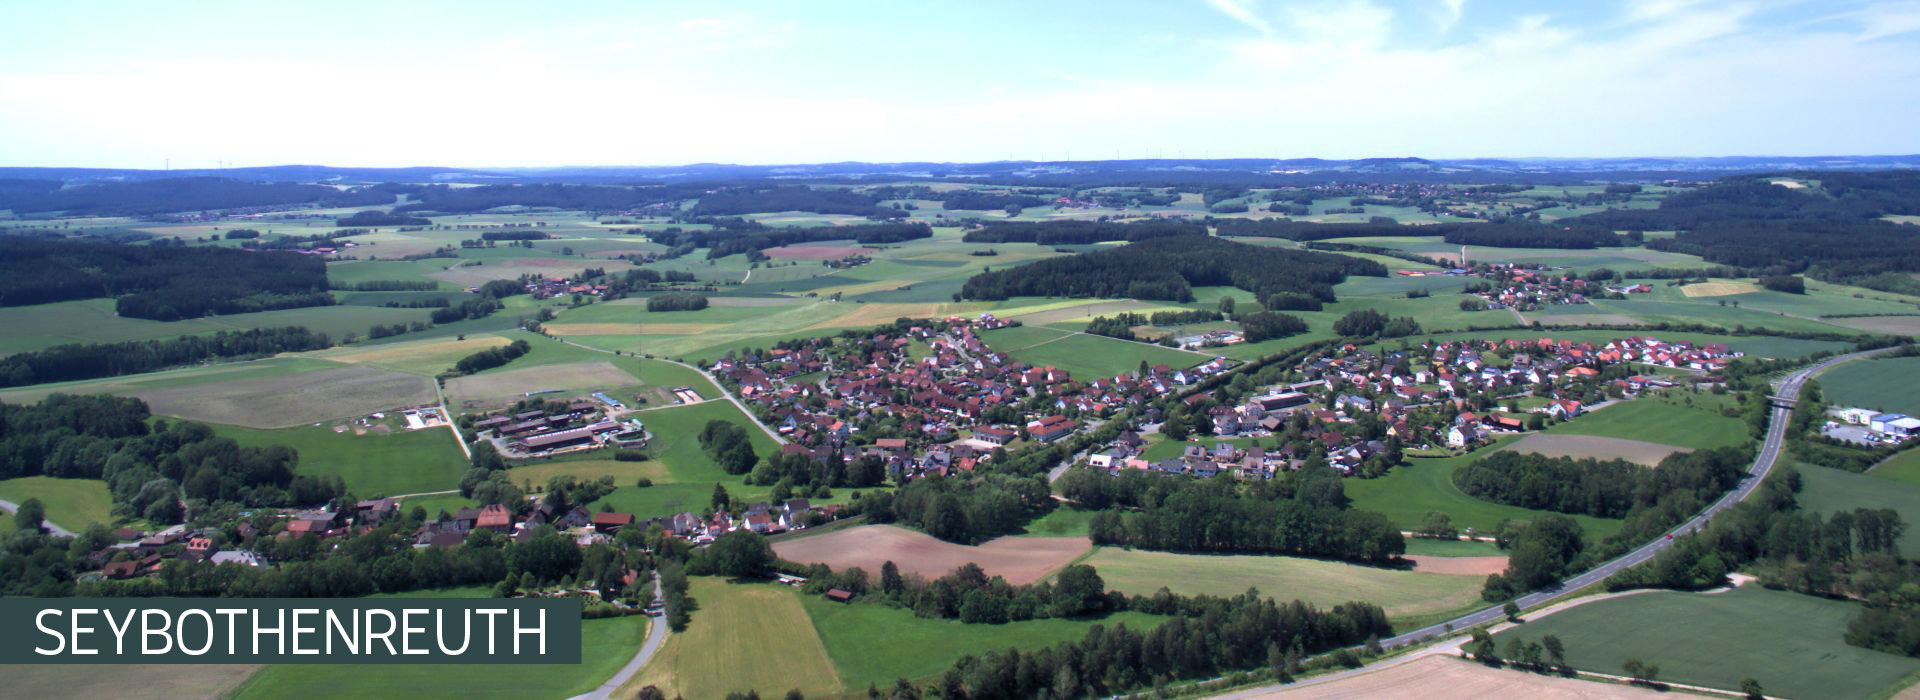 Sliderbild Seybothenreuth mit Ortsbezeichnung